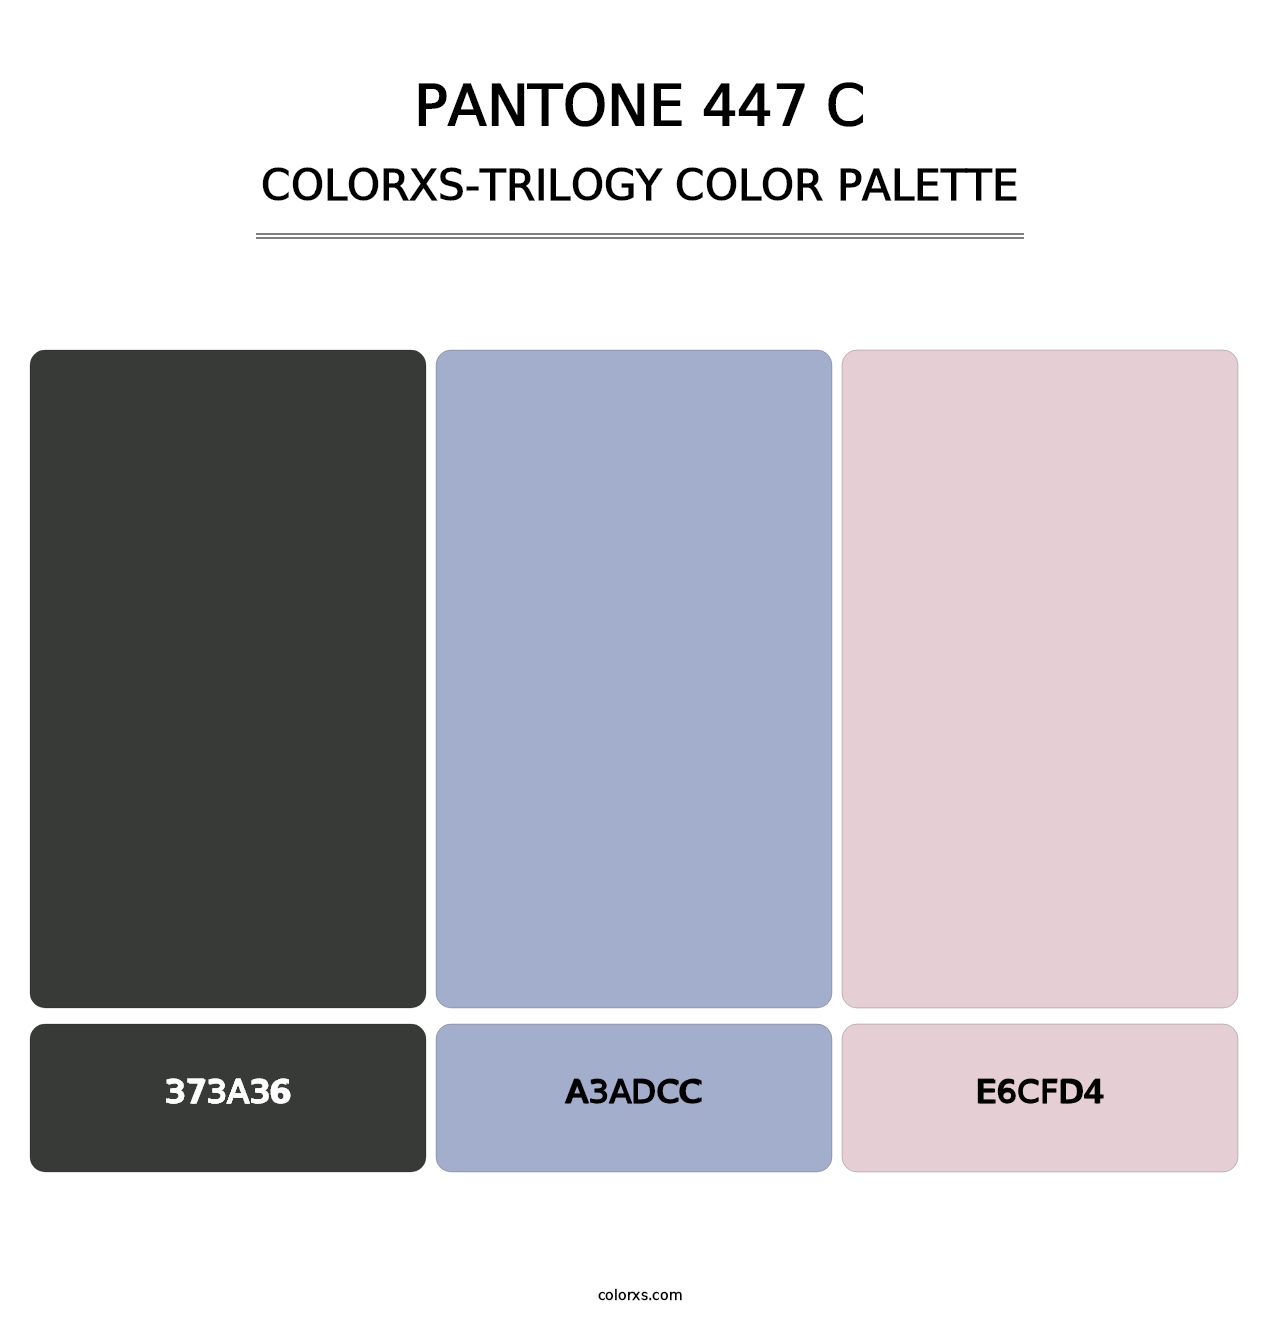 PANTONE 447 C - Colorxs Trilogy Palette